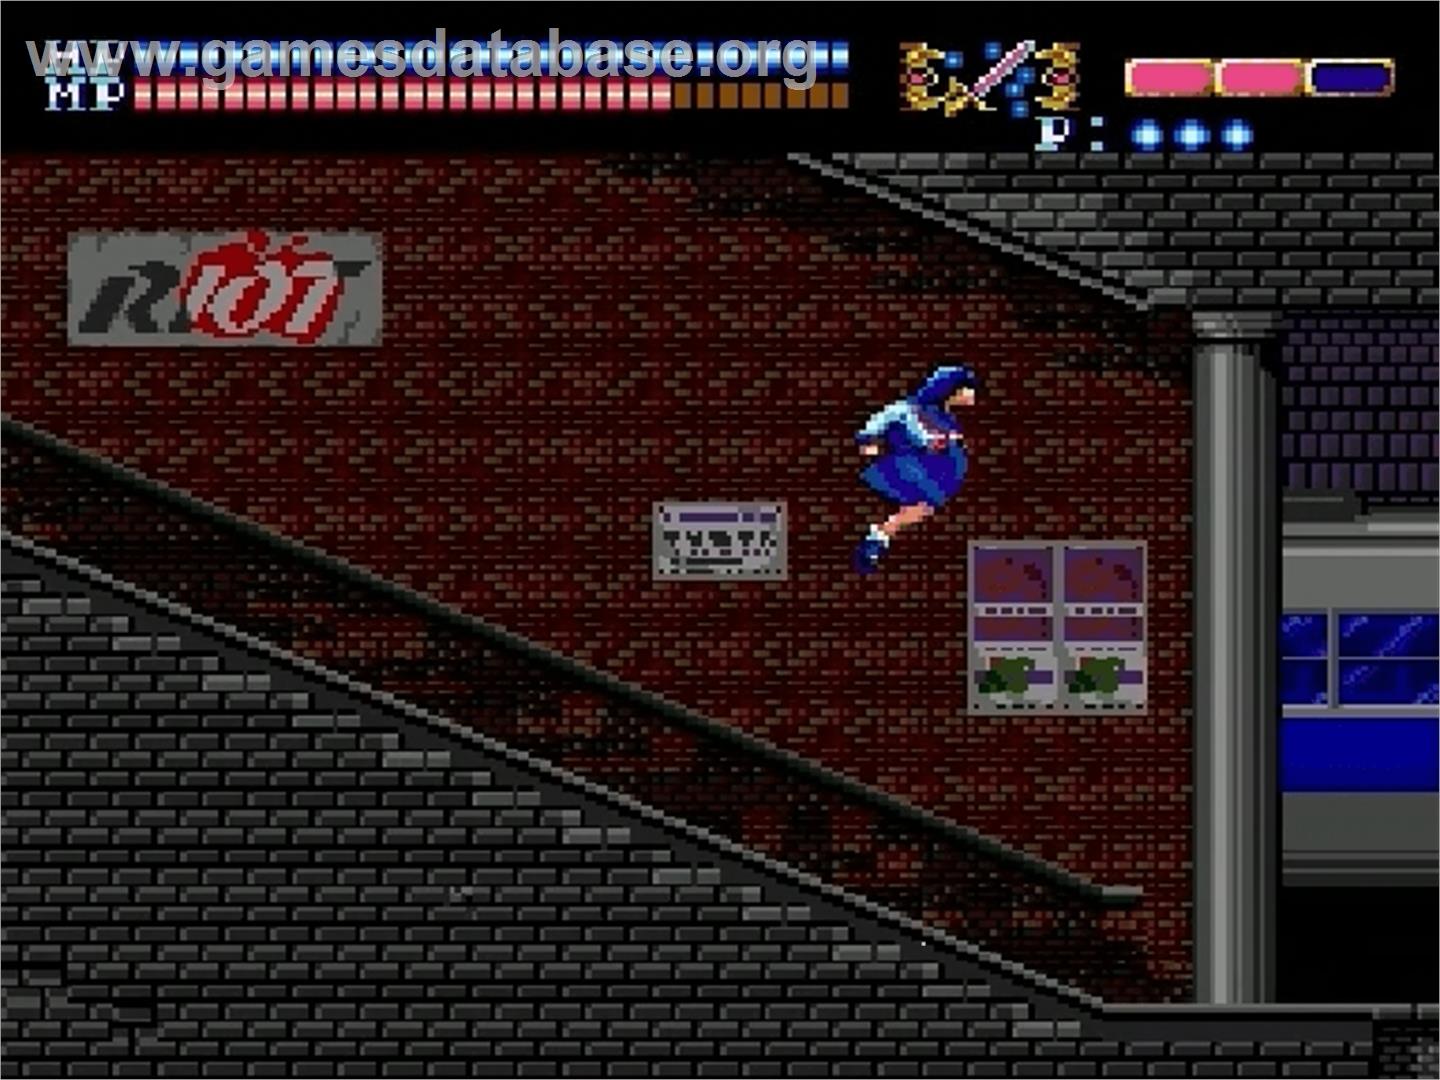 Valis: The Fantasm Soldier - Sega Genesis - Artwork - In Game